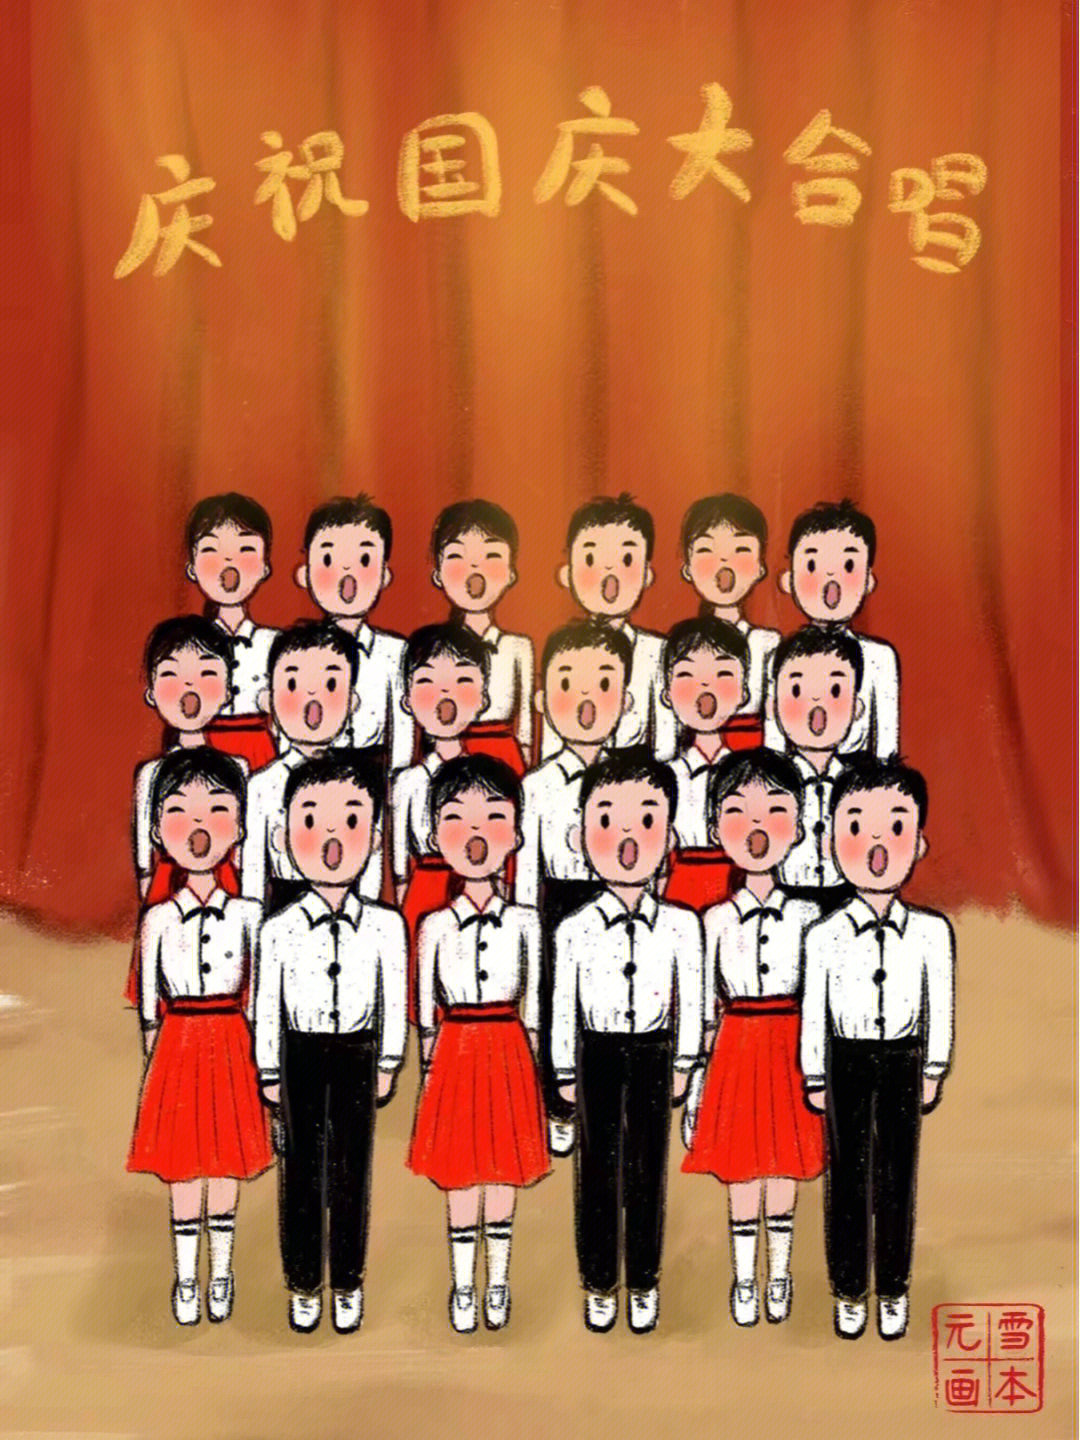 图一:上学时每逢国庆节,学校常常组织红歌大合唱,经过很多天刻苦排练